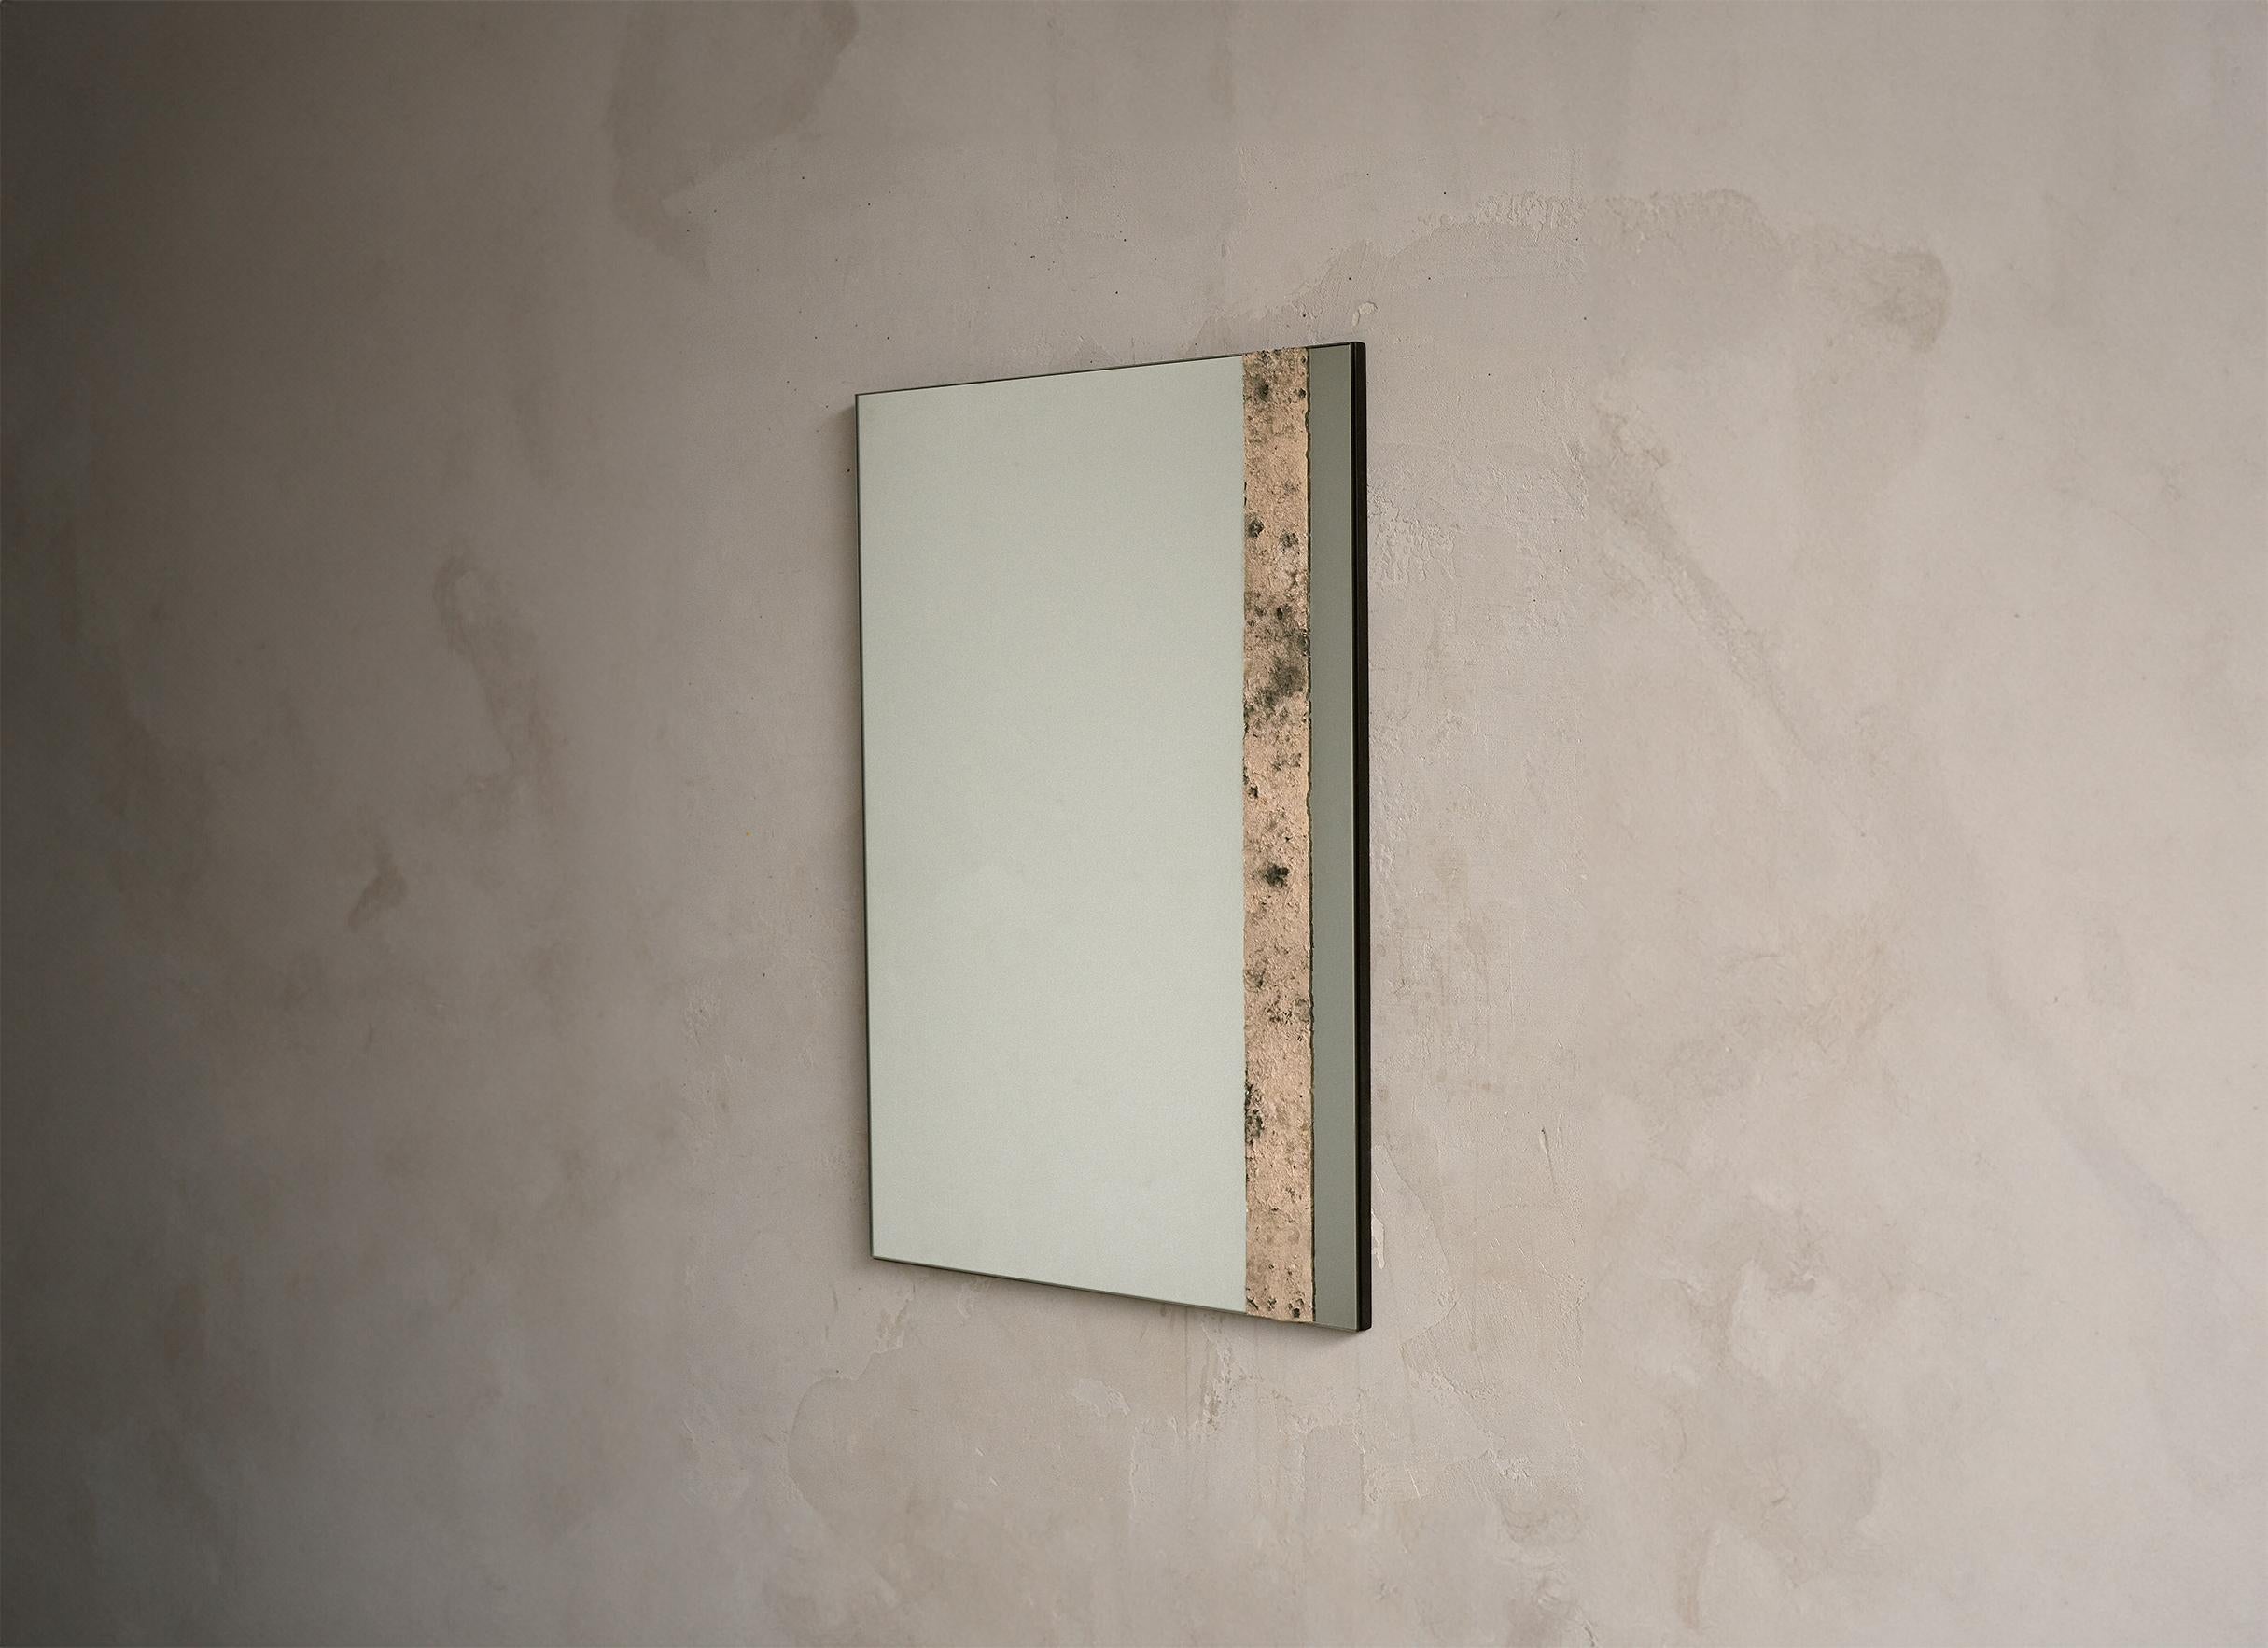 Der quadratische Spiegel Pompeji besteht aus gebrannter Asche, die von Hand gestreut und bearbeitet wird.

*Form und Farbe der gebrannten Asche sind organisch und können von Stück zu Stück abweichen, um die Einzigartigkeit der Hand und der Technik